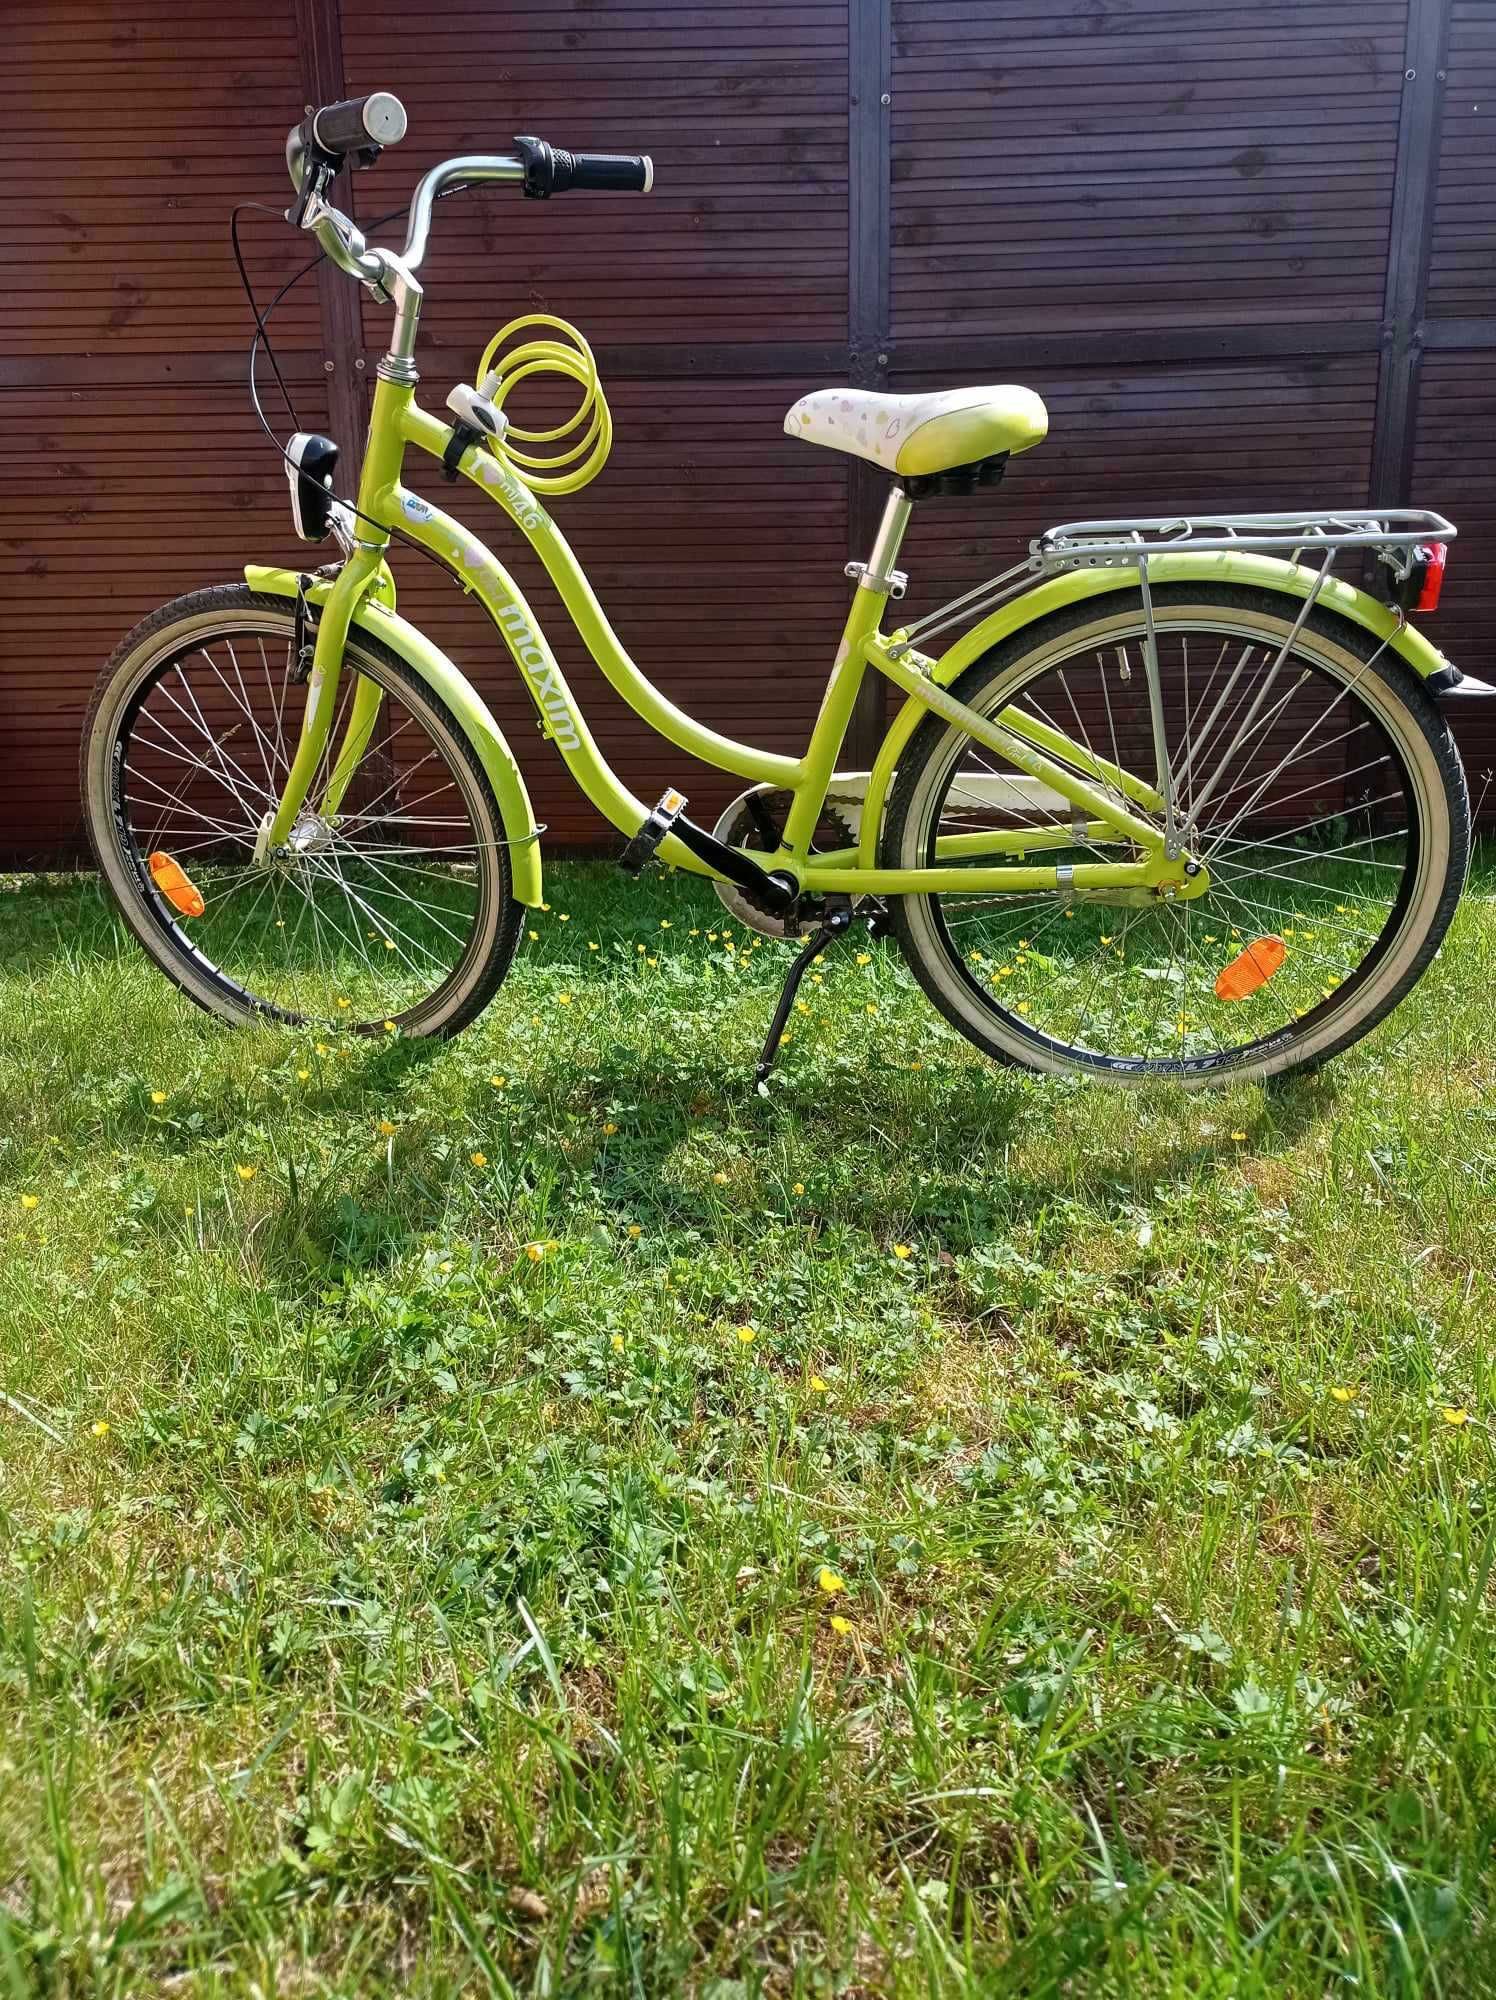 Sprzedam rower miejski MAXIM MJ 4.6, kola 24", kolor limonkowy